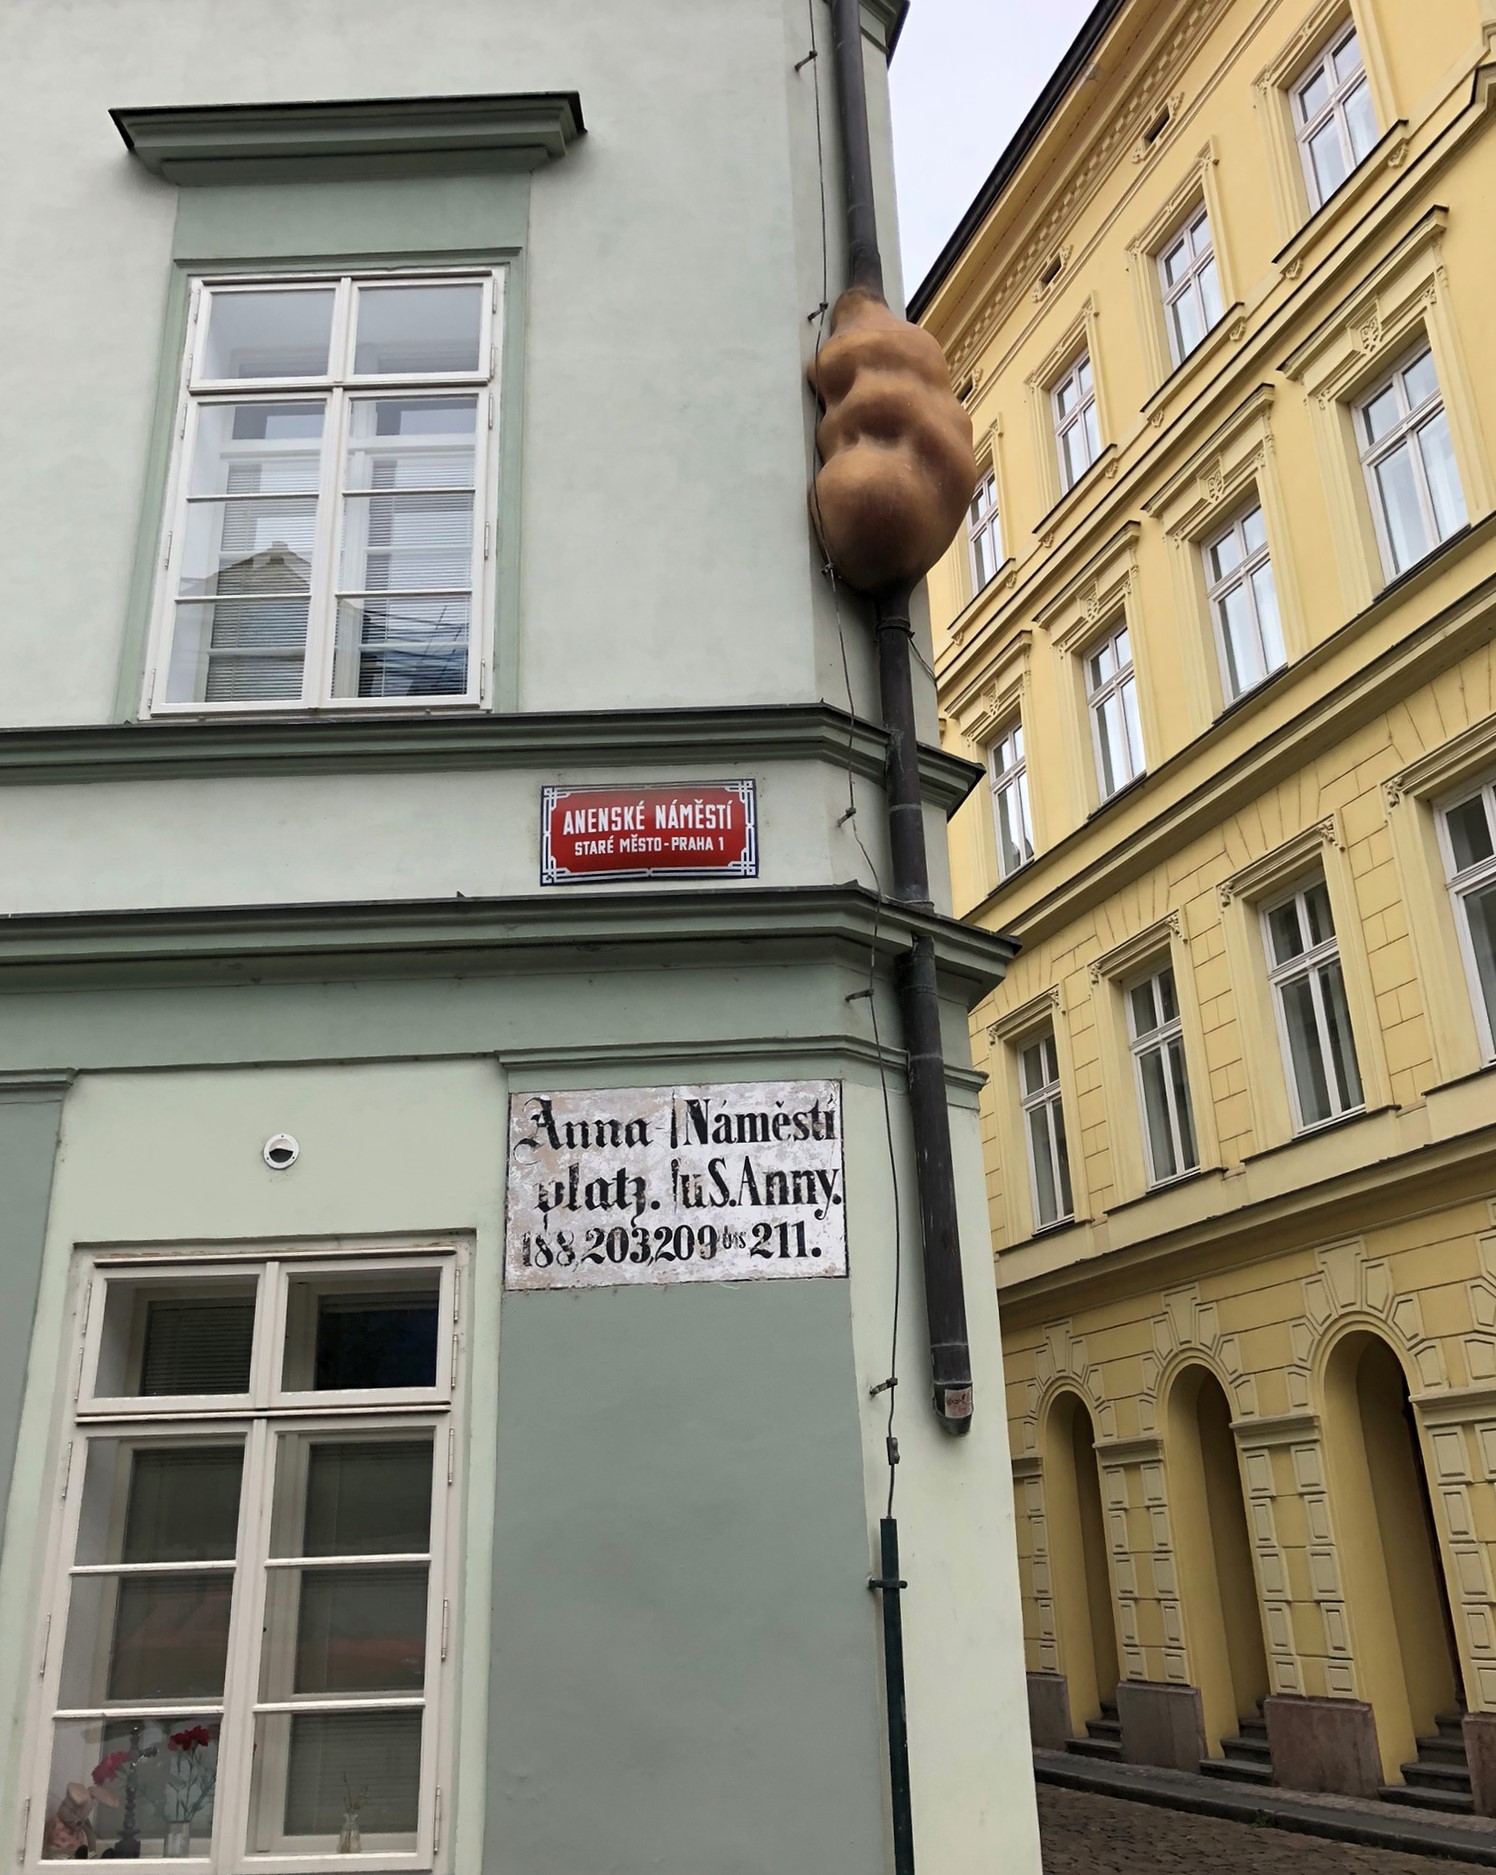 Skulptur Embryo von David Cerny an einer Regenrinne am Anenské Platz in der Prager Altstadt 